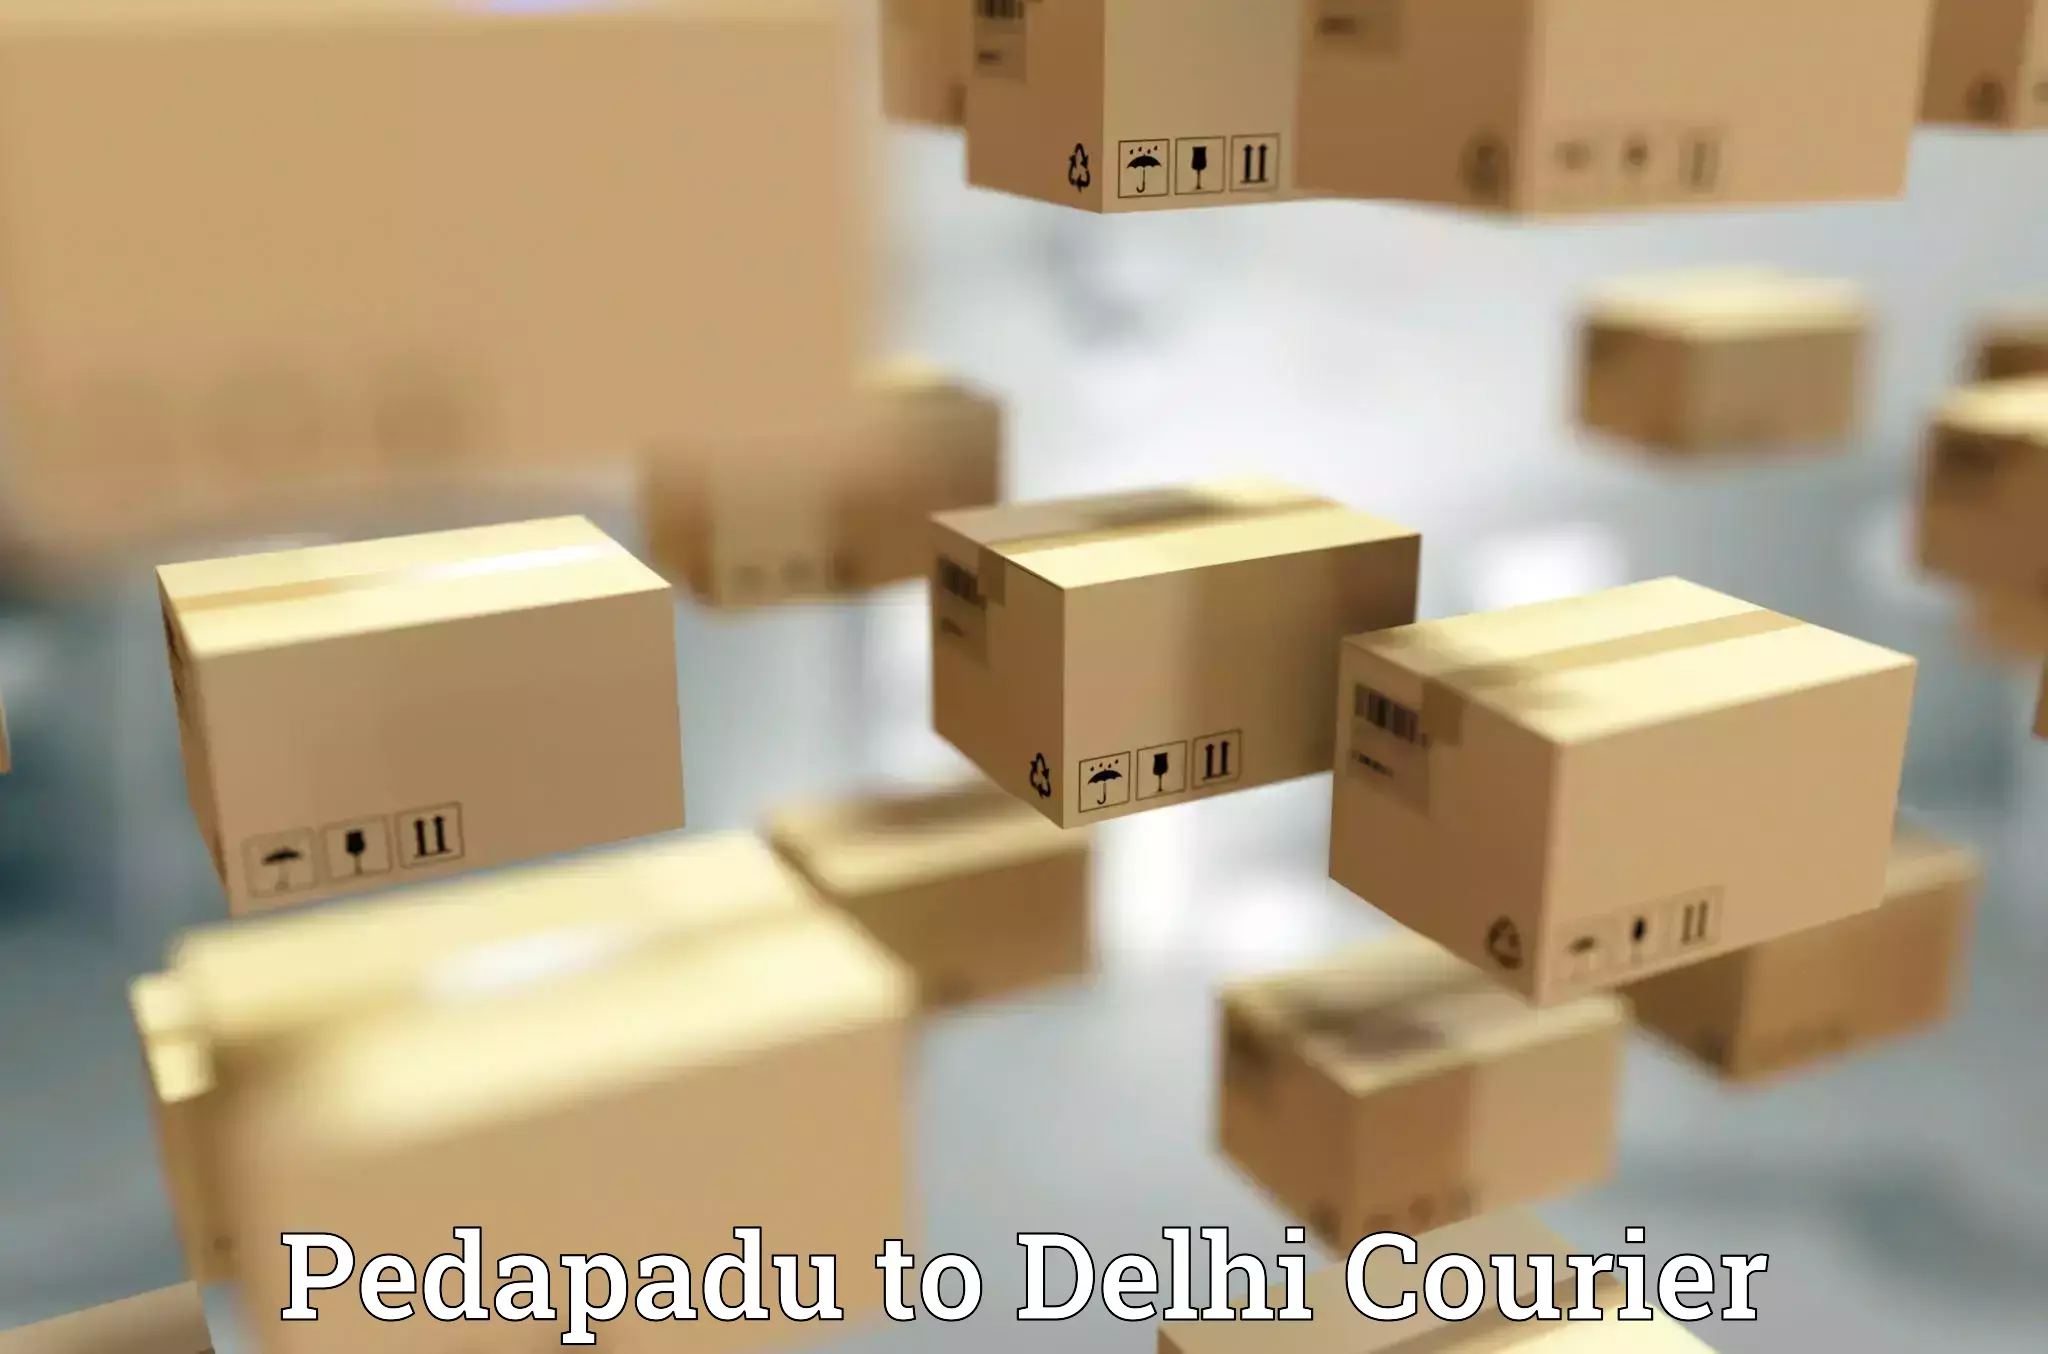 Express delivery capabilities Pedapadu to Kalkaji